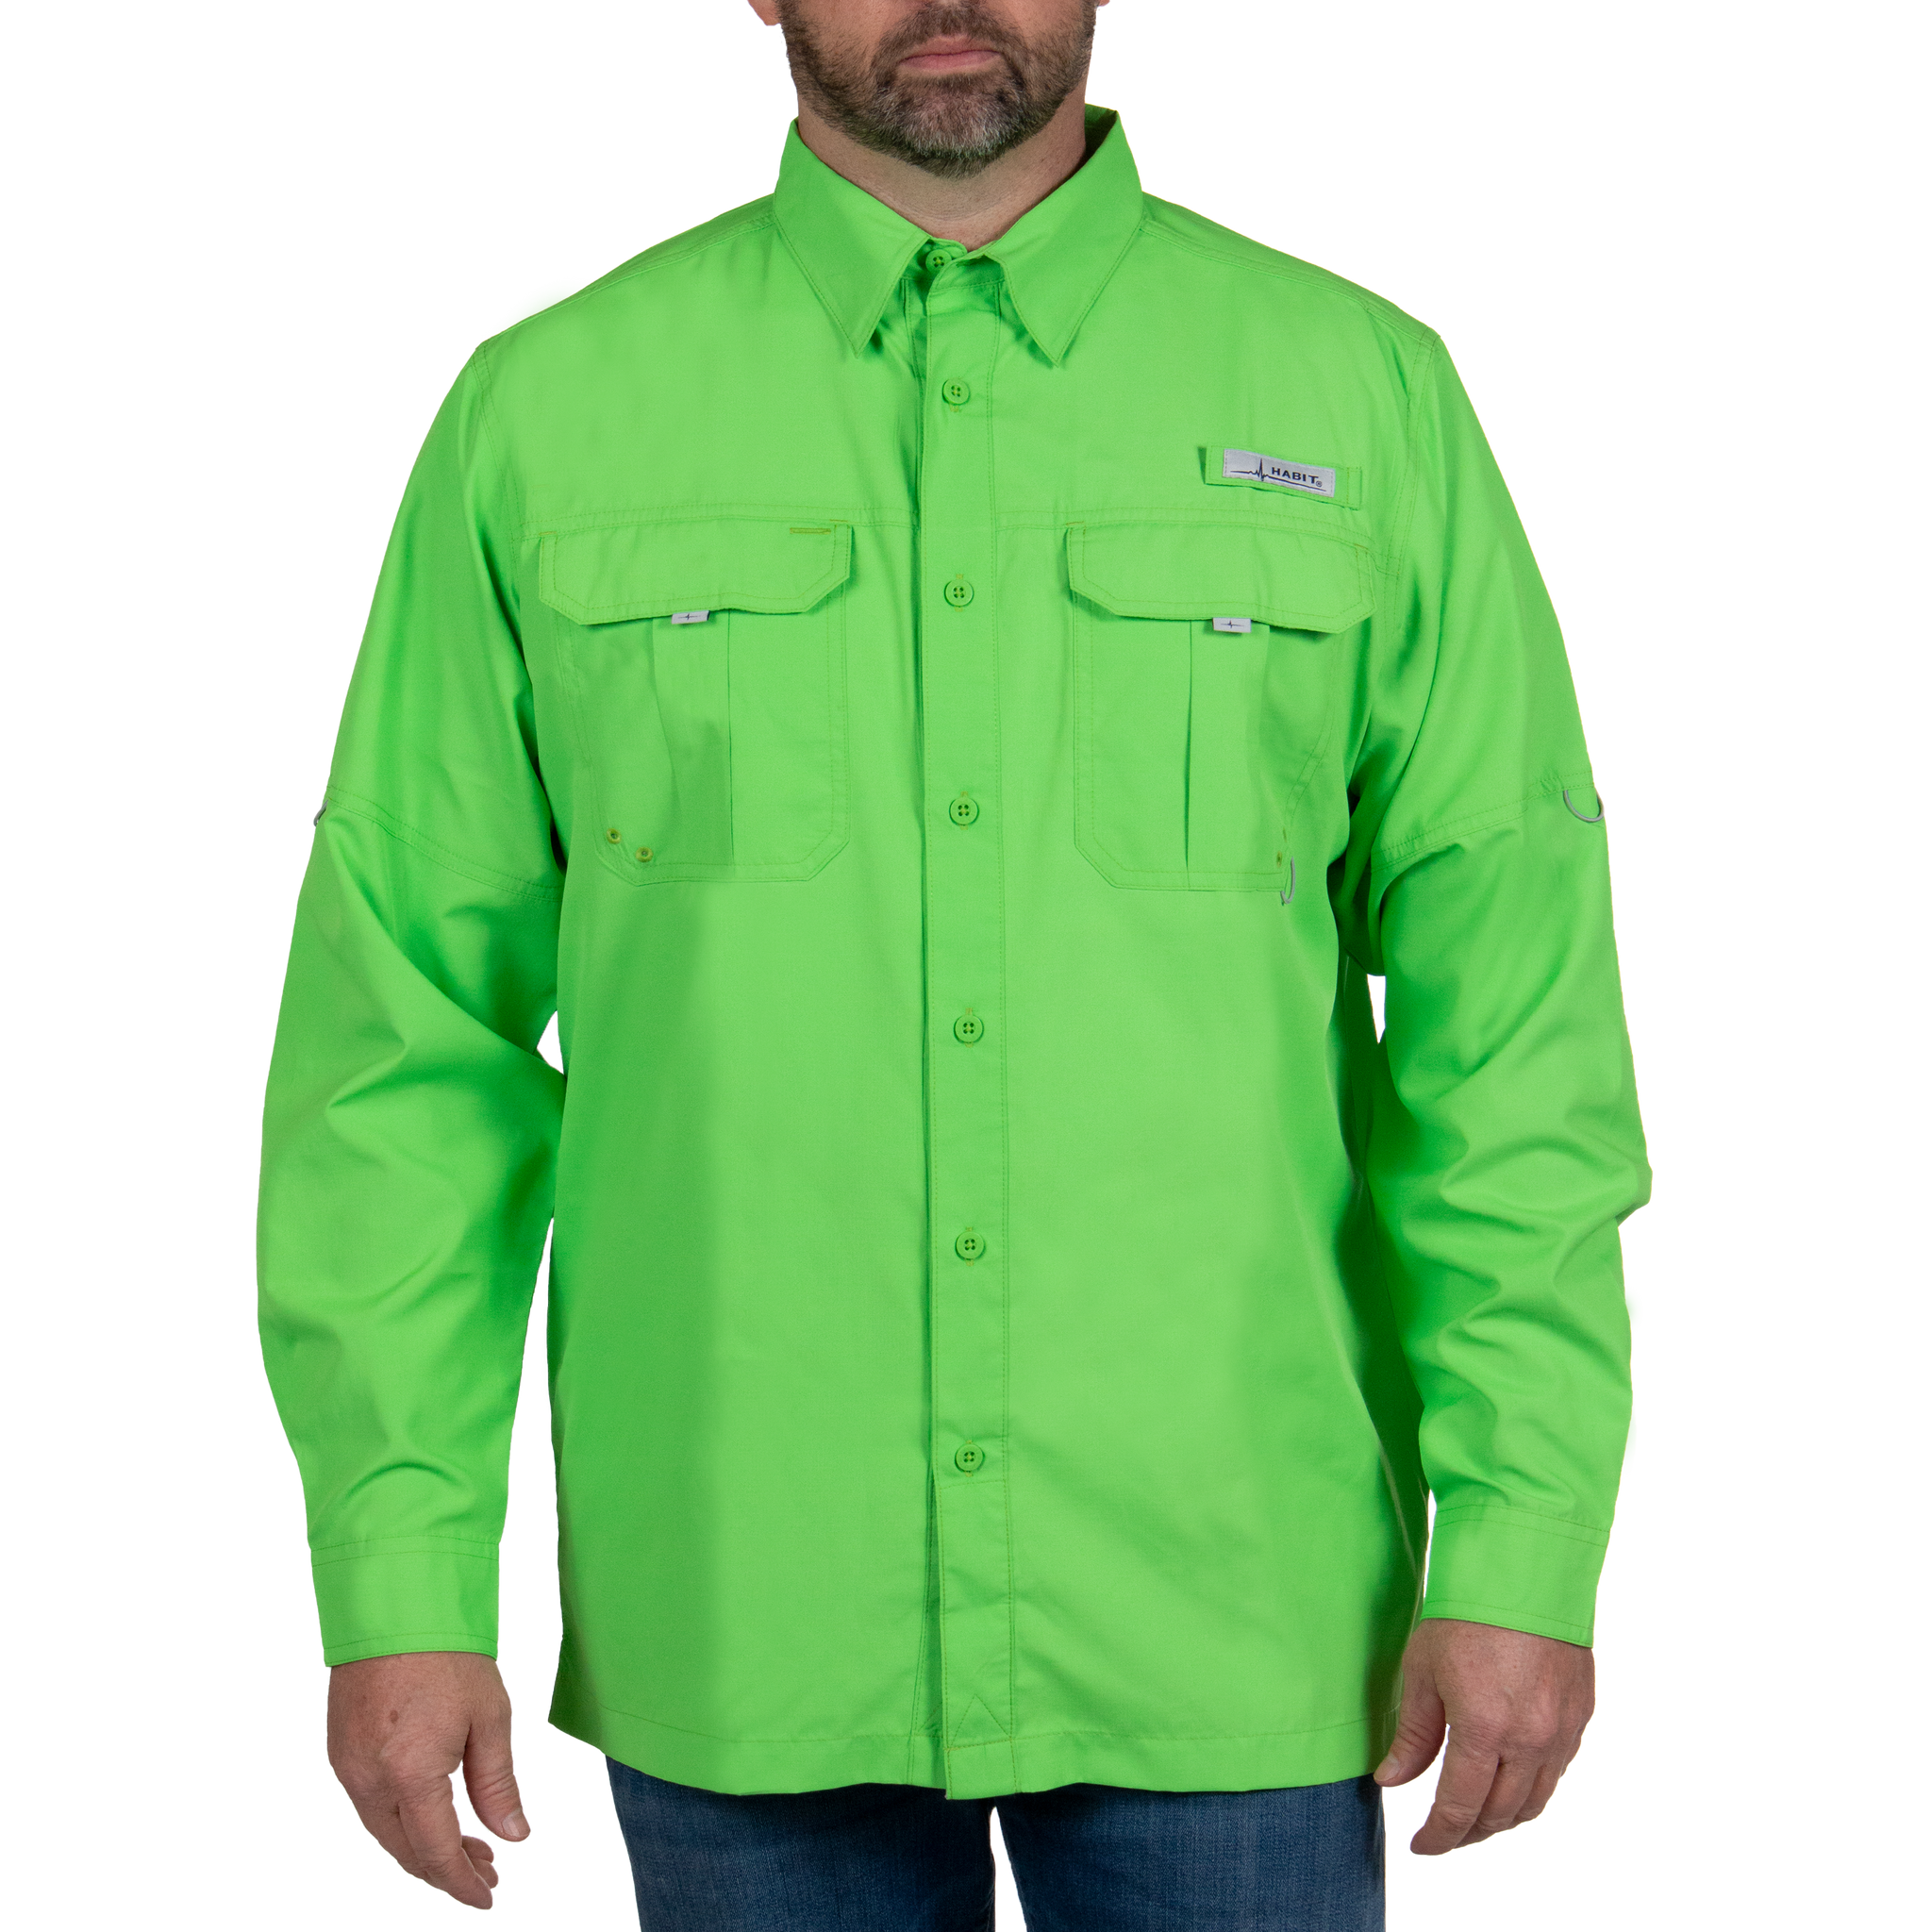 Men’s Fourche Mountain Long Sleeve River Guide Fishing Shirt Green Flash